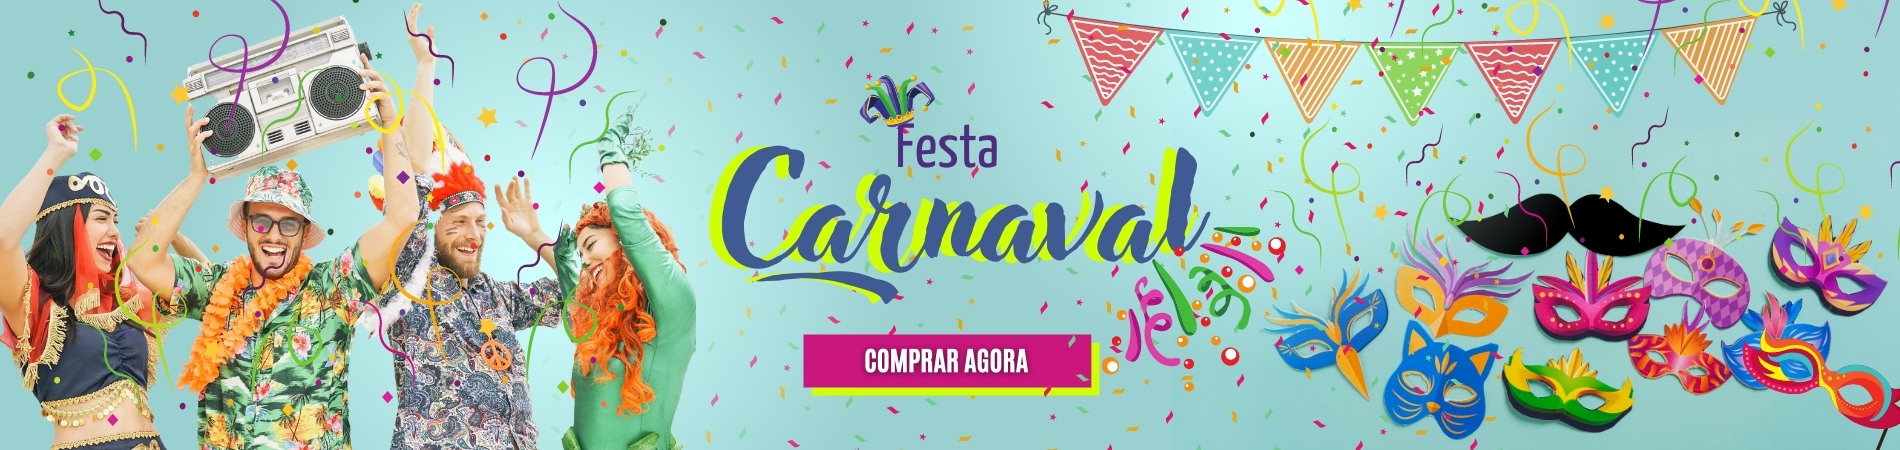 Festa Carnaval